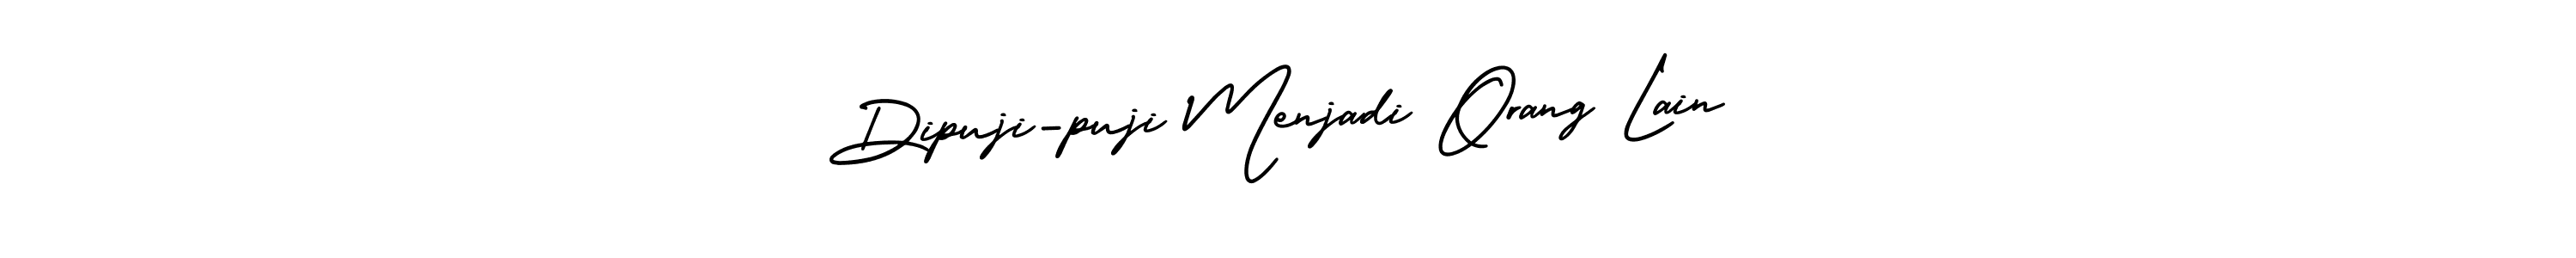 Create a beautiful signature design for name Dipuji-puji Menjadi Orang Lain. With this signature (AmerikaSignatureDemo-Regular) fonts, you can make a handwritten signature for free. Dipuji-puji Menjadi Orang Lain signature style 3 images and pictures png